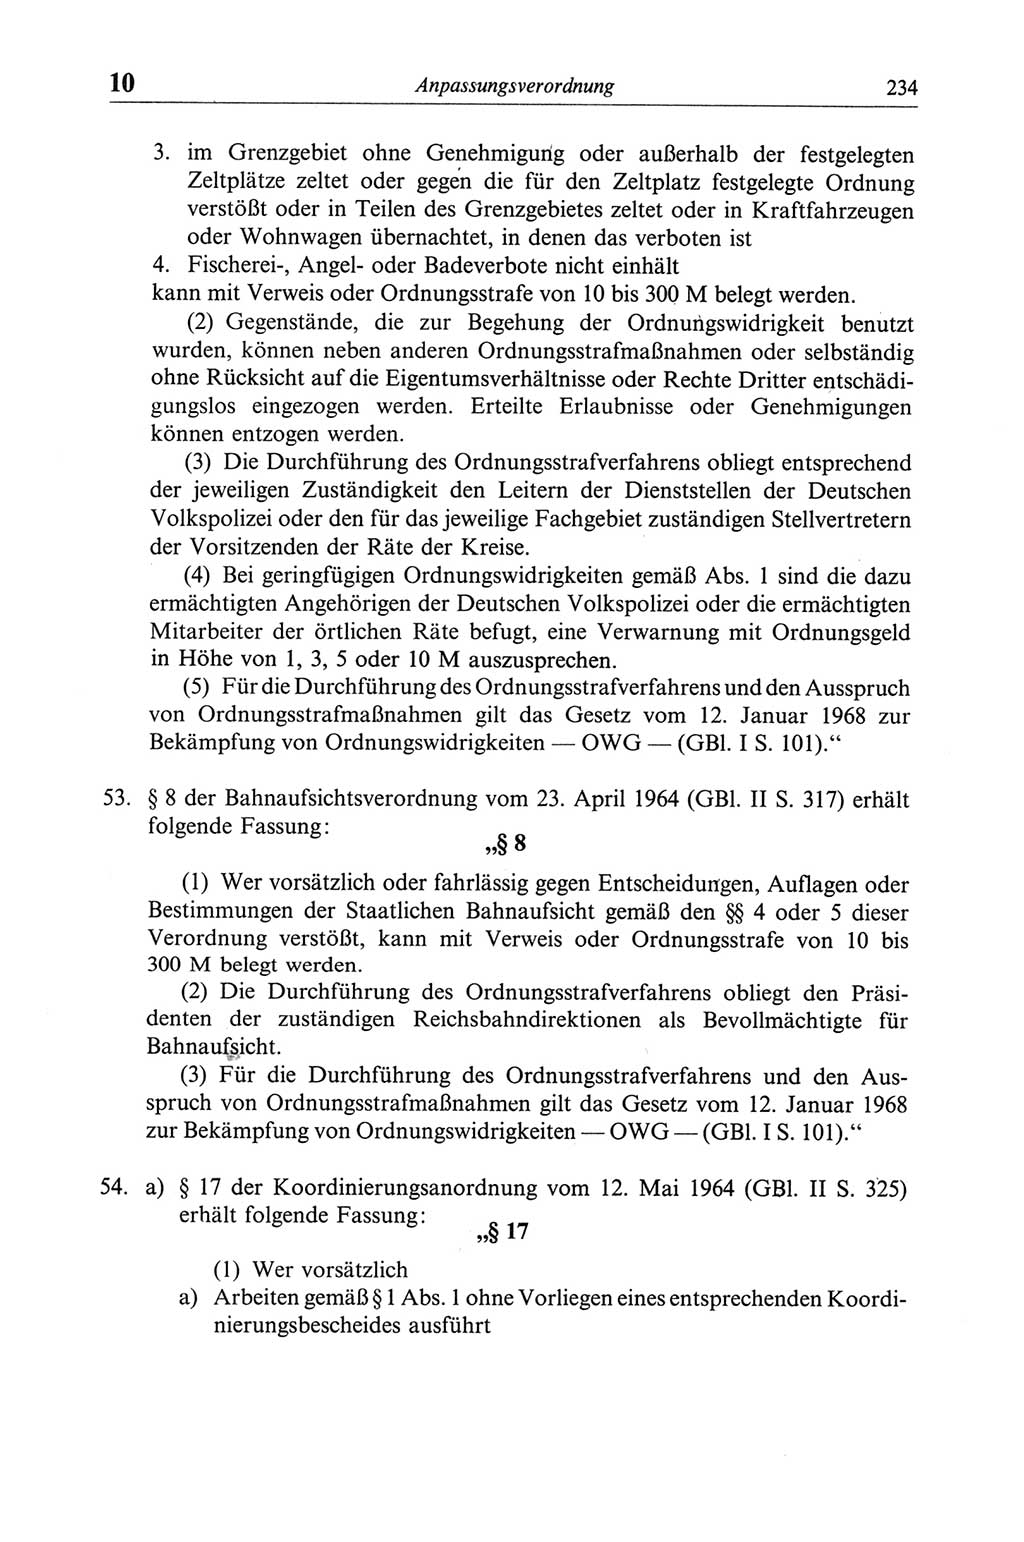 Strafgesetzbuch (StGB) der Deutschen Demokratischen Republik (DDR) und angrenzende Gesetze und Bestimmungen 1968, Seite 234 (StGB Ges. Best. DDR 1968, S. 234)